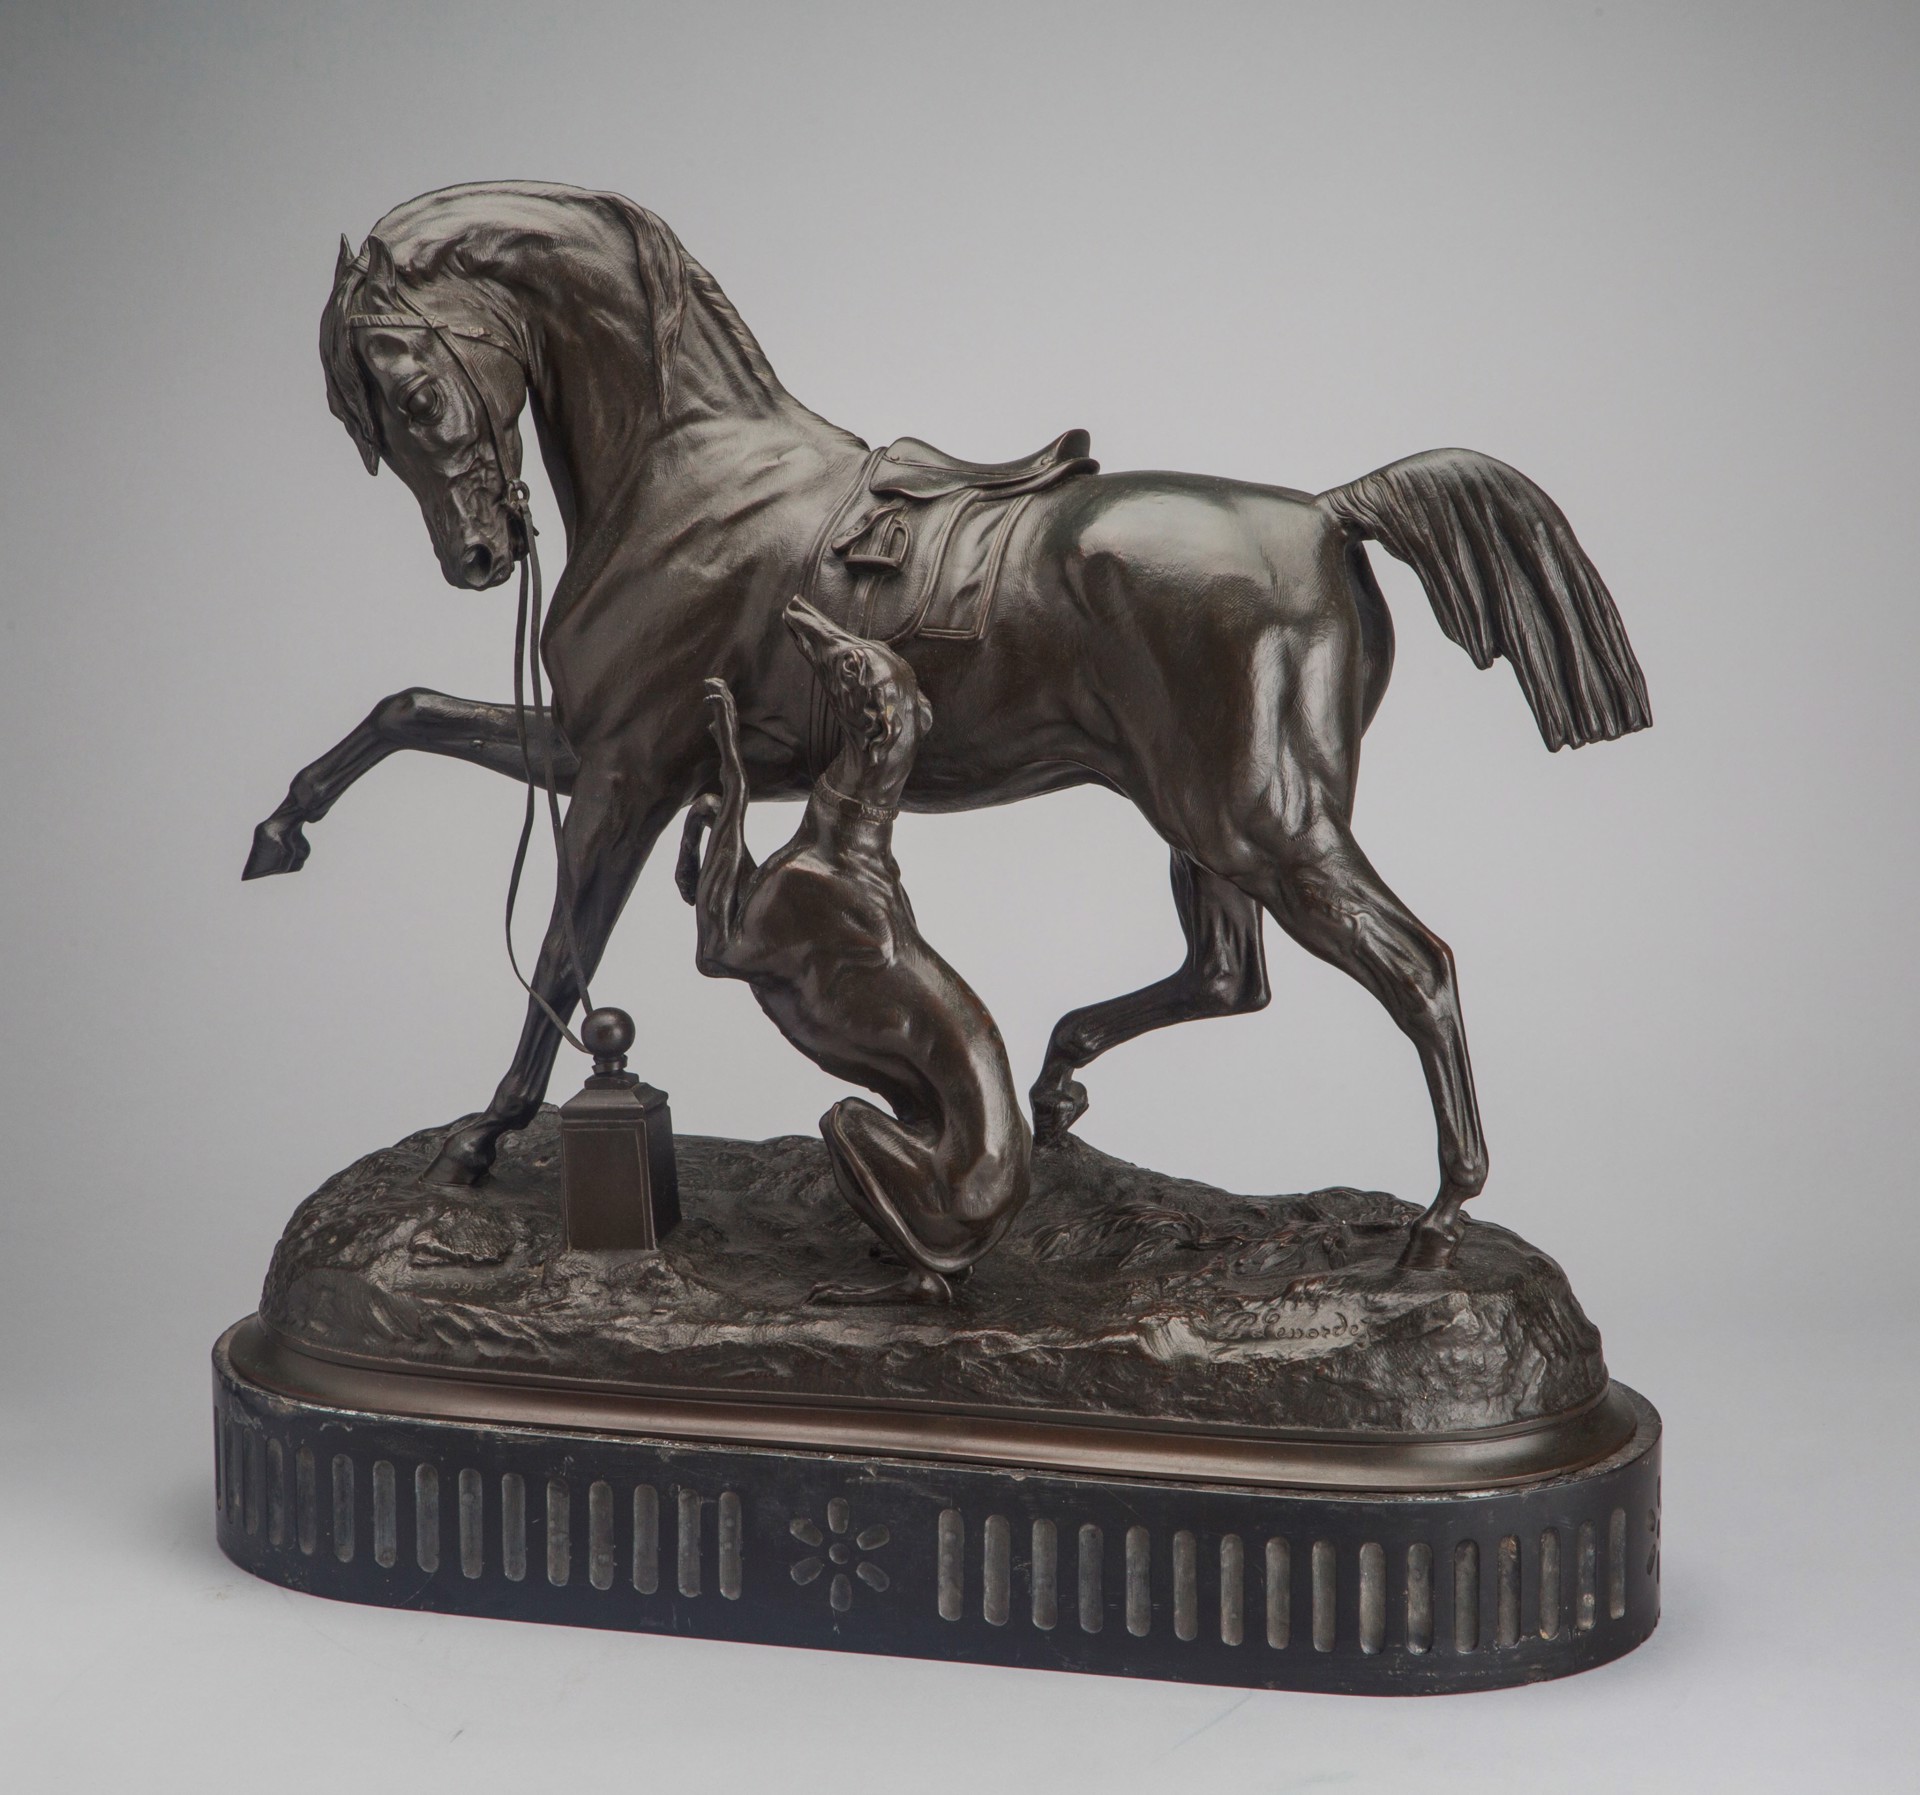 Saddled Horse and Long Dog by Pierre Lenordez